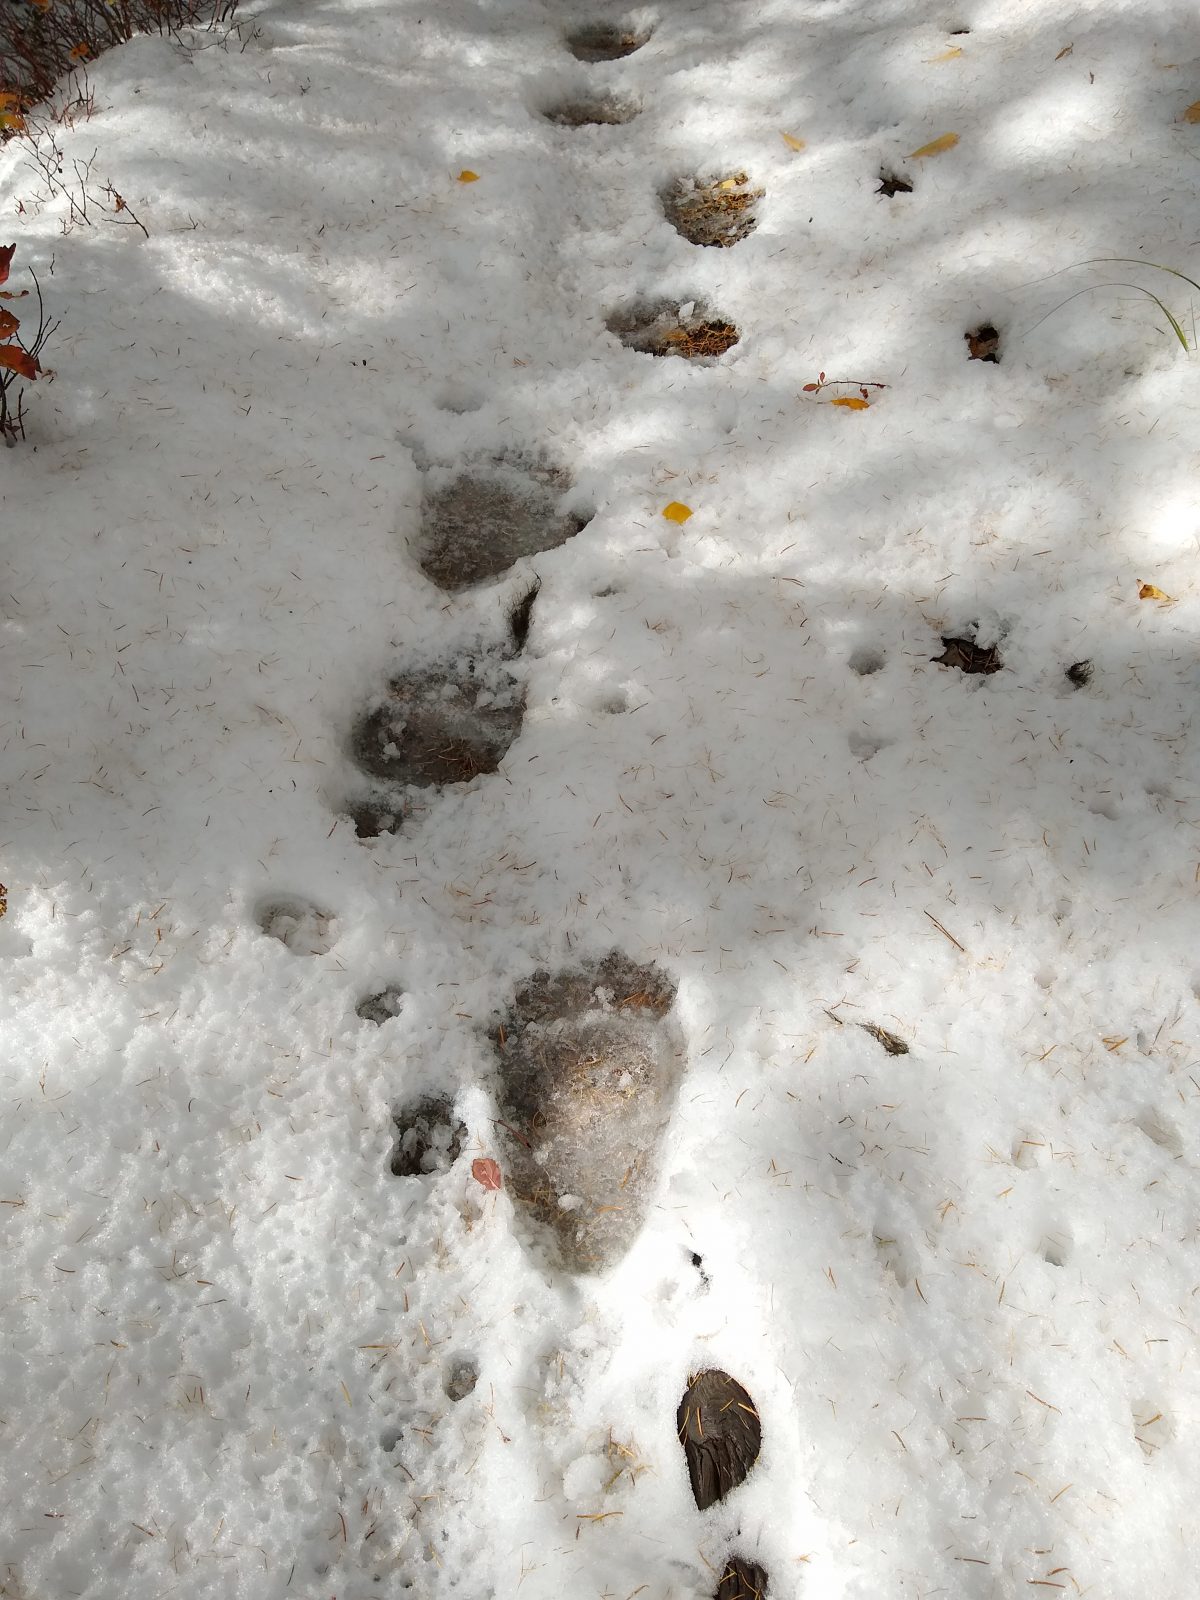 Black bear tracks in snow